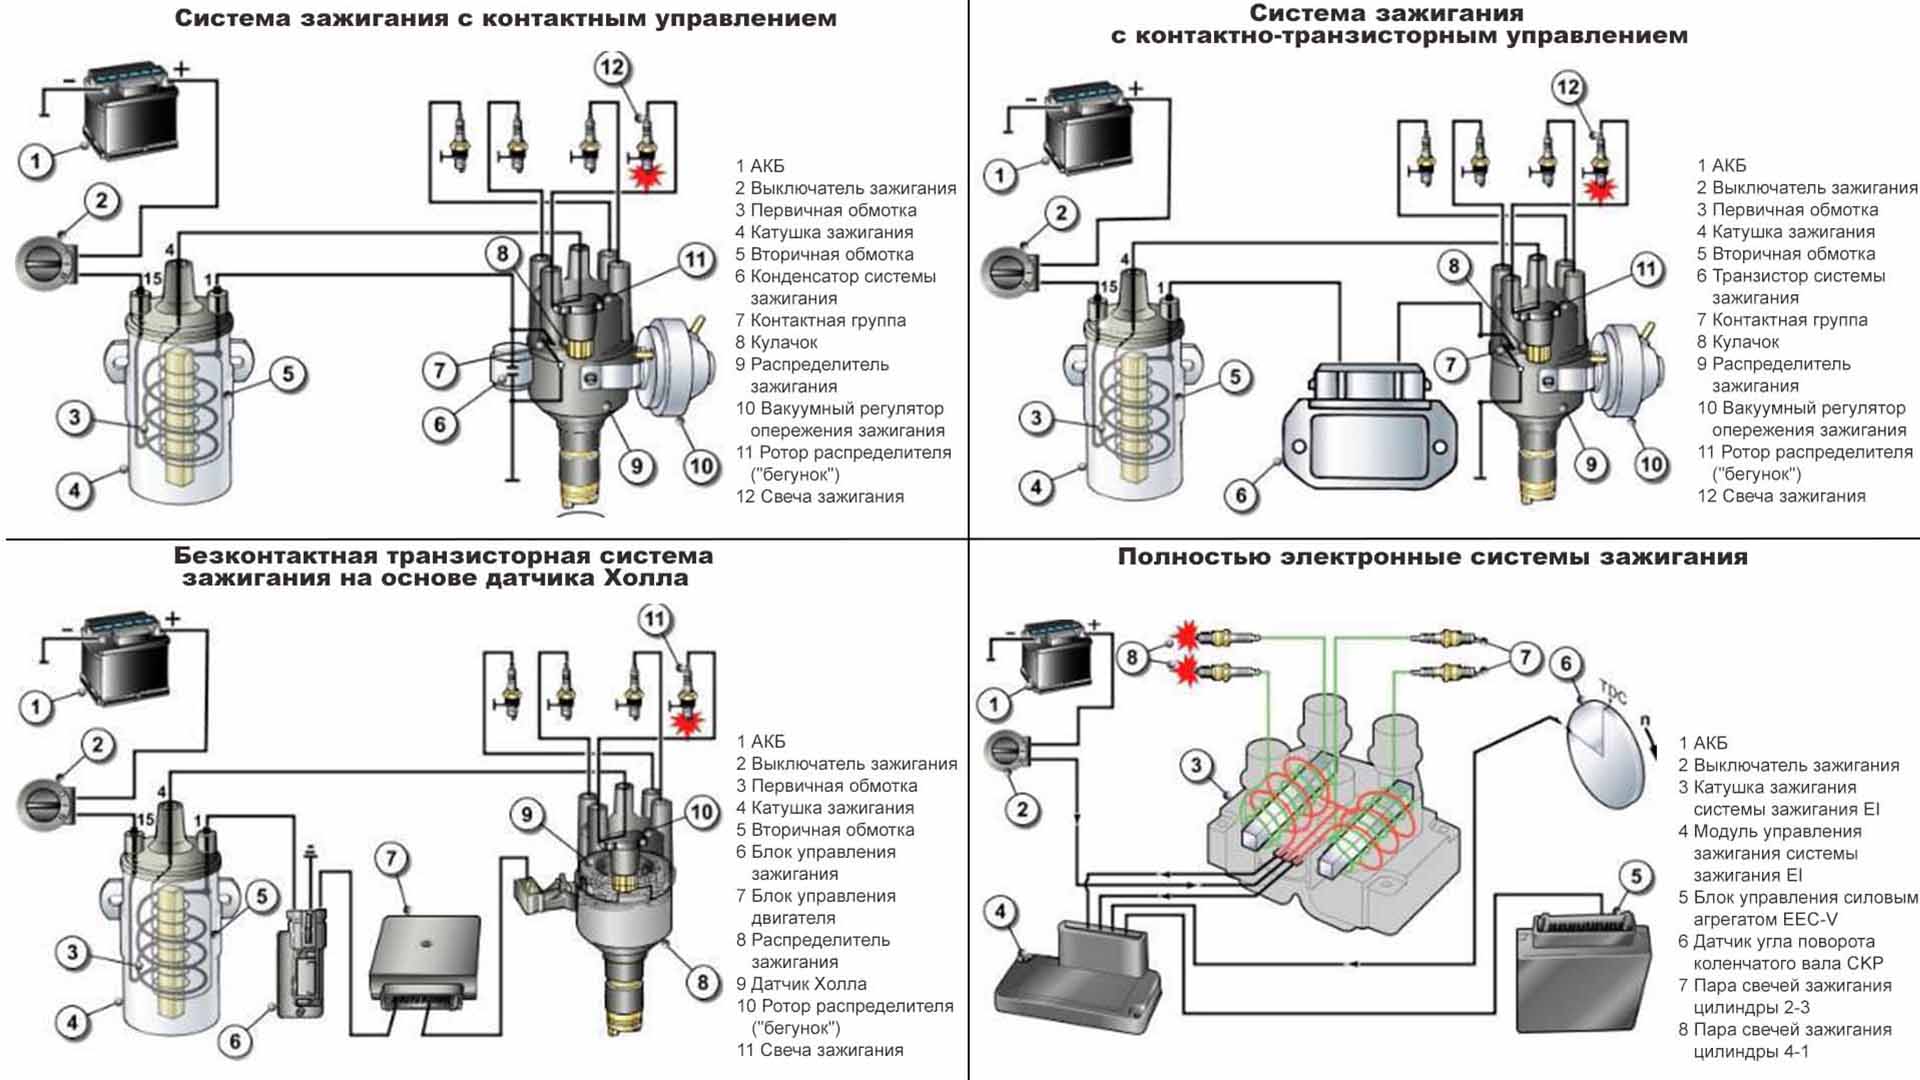 Микропроцессорная (электронная) система зажигания: назначение, принципы построения и работы